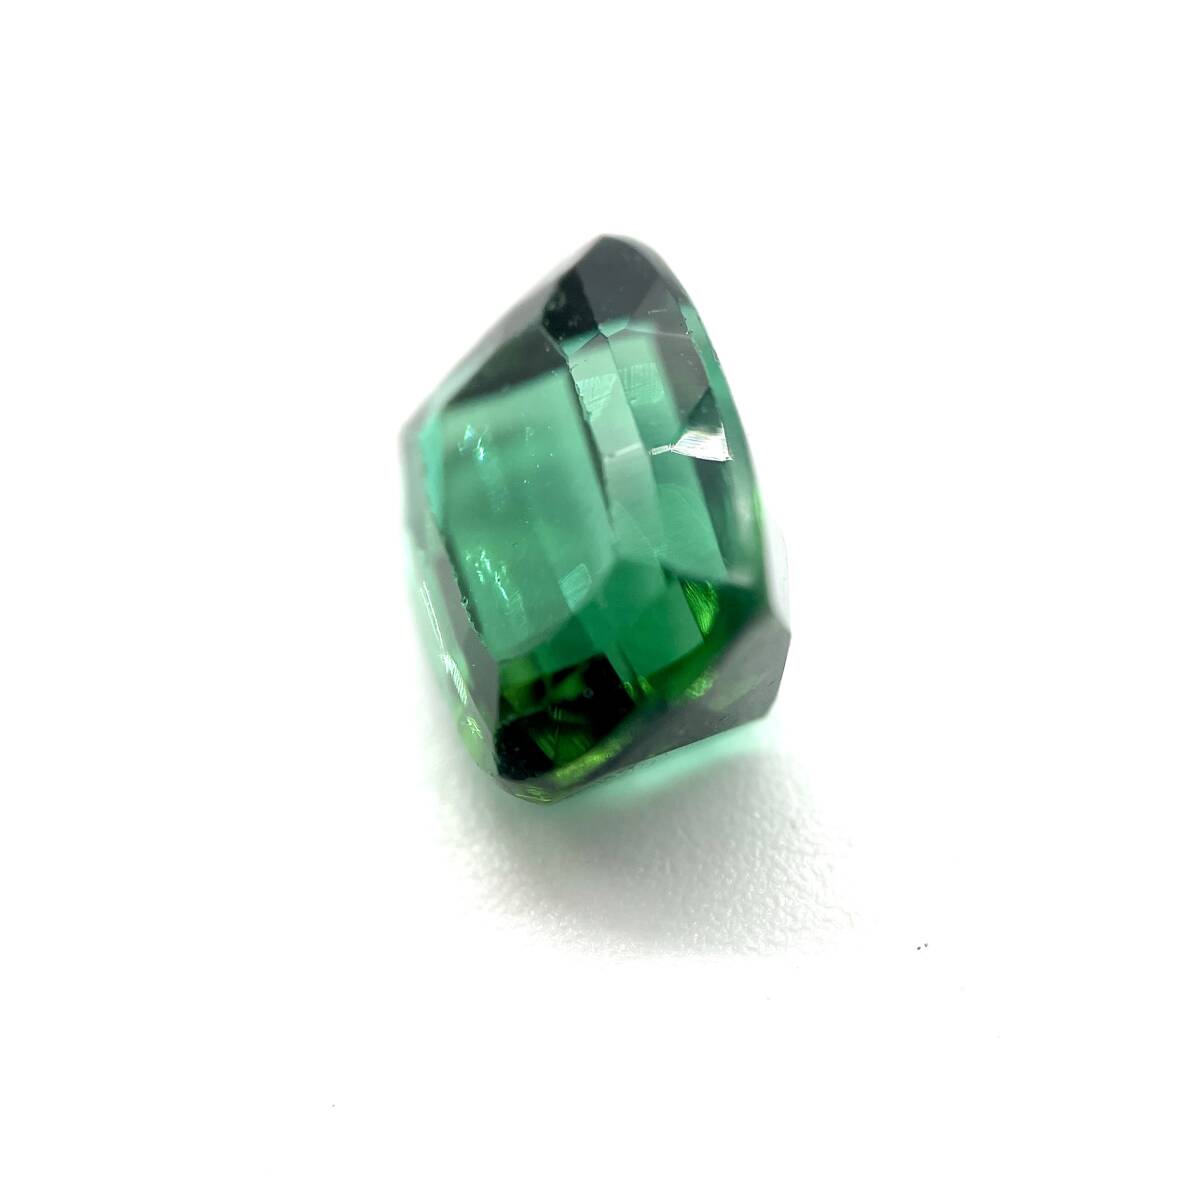  натуральный зеленый турмалин разрозненный 2.884ctso-ting имеется примерно 7.4×9.1×5.1mm камни не в изделии снимать камень драгоценнный камень ювелирные изделия натуральный камень квадратное tourmaline